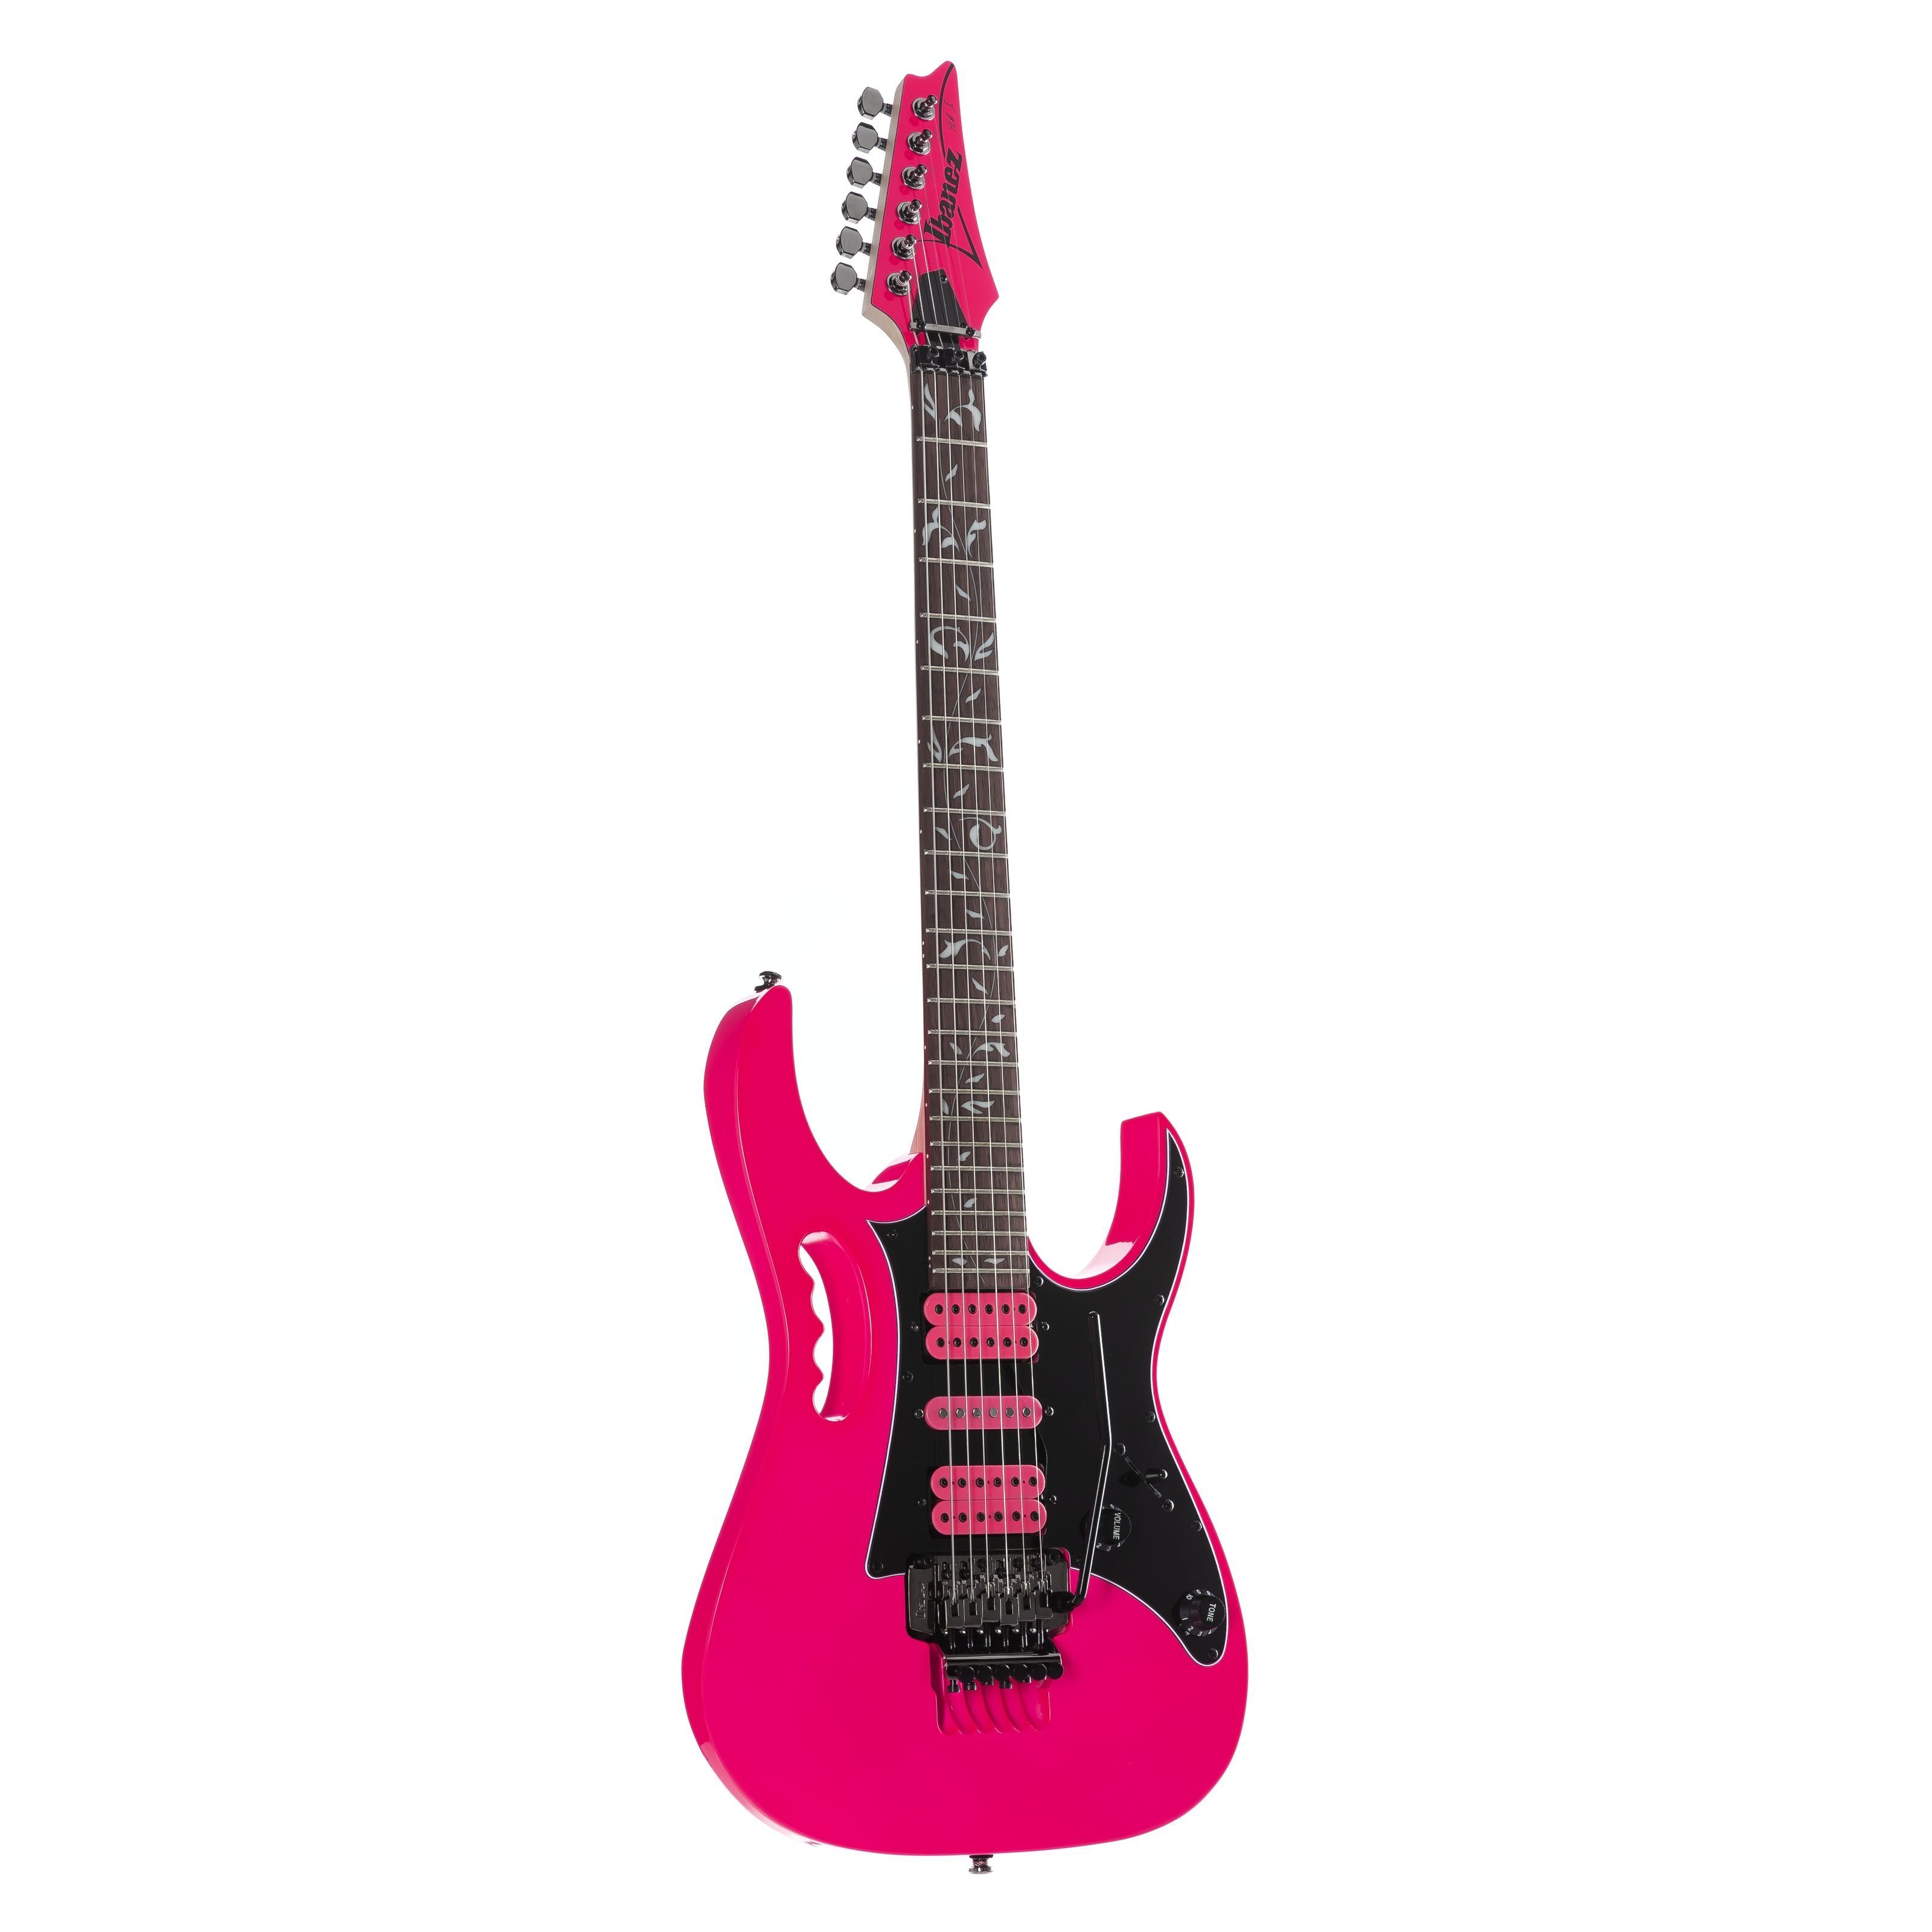 Ibanez E-Gitarre, JEMJRSP-PK Steve Vai Jem Jr. Pink, E-Gitarren, Ibanez Modelle, JEMJRSP-PK Steve Vai Jem Jr. Pink - E-Gitarre